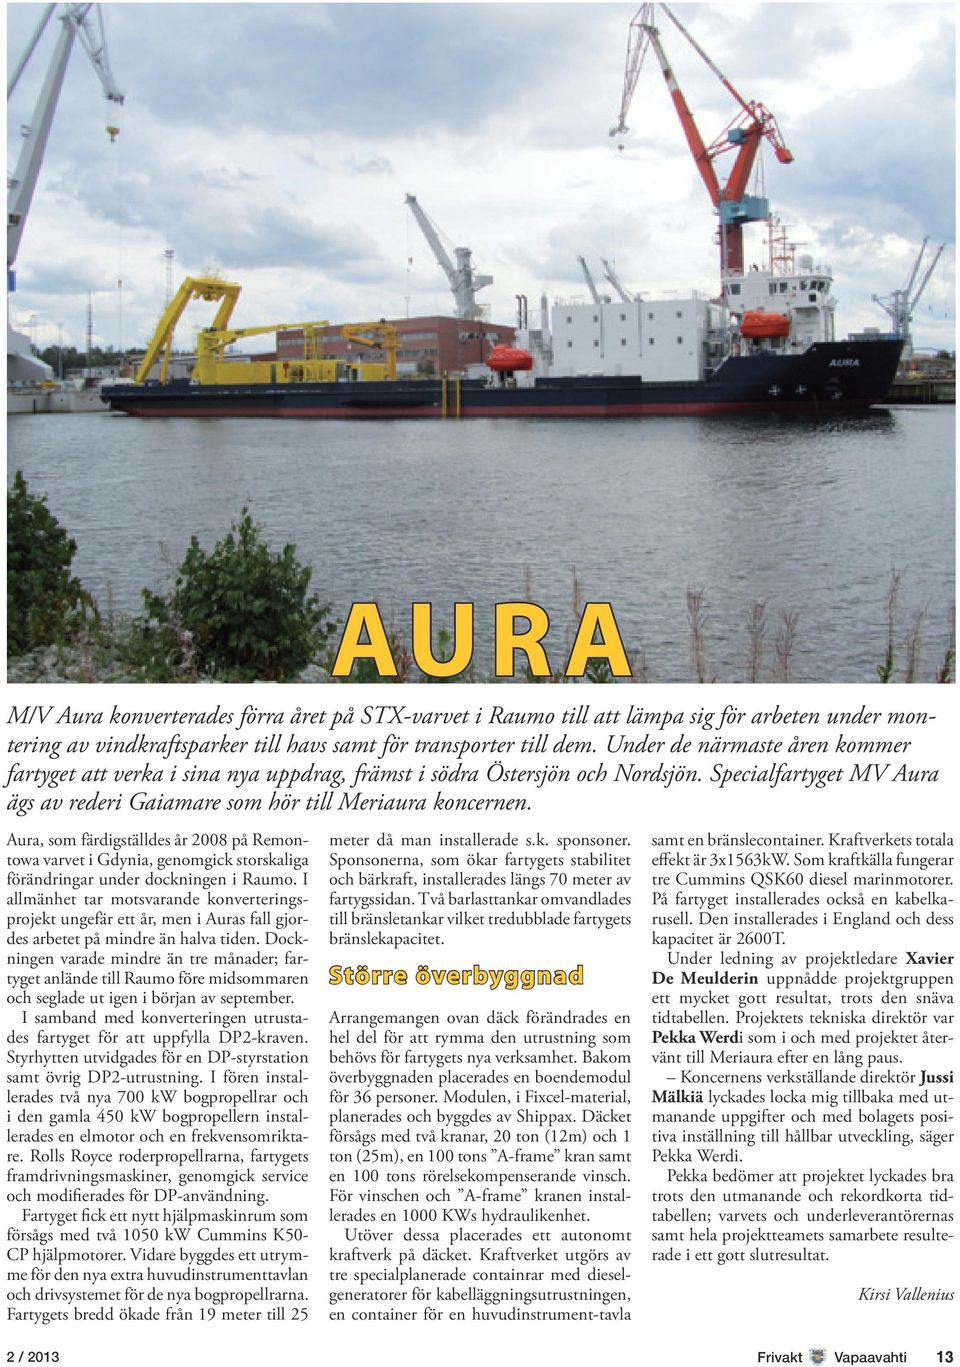 Aura, som färdigställdes år 2008 på Remontowa varvet i Gdynia, genomgick storskaliga förändringar under dockningen i Raumo.